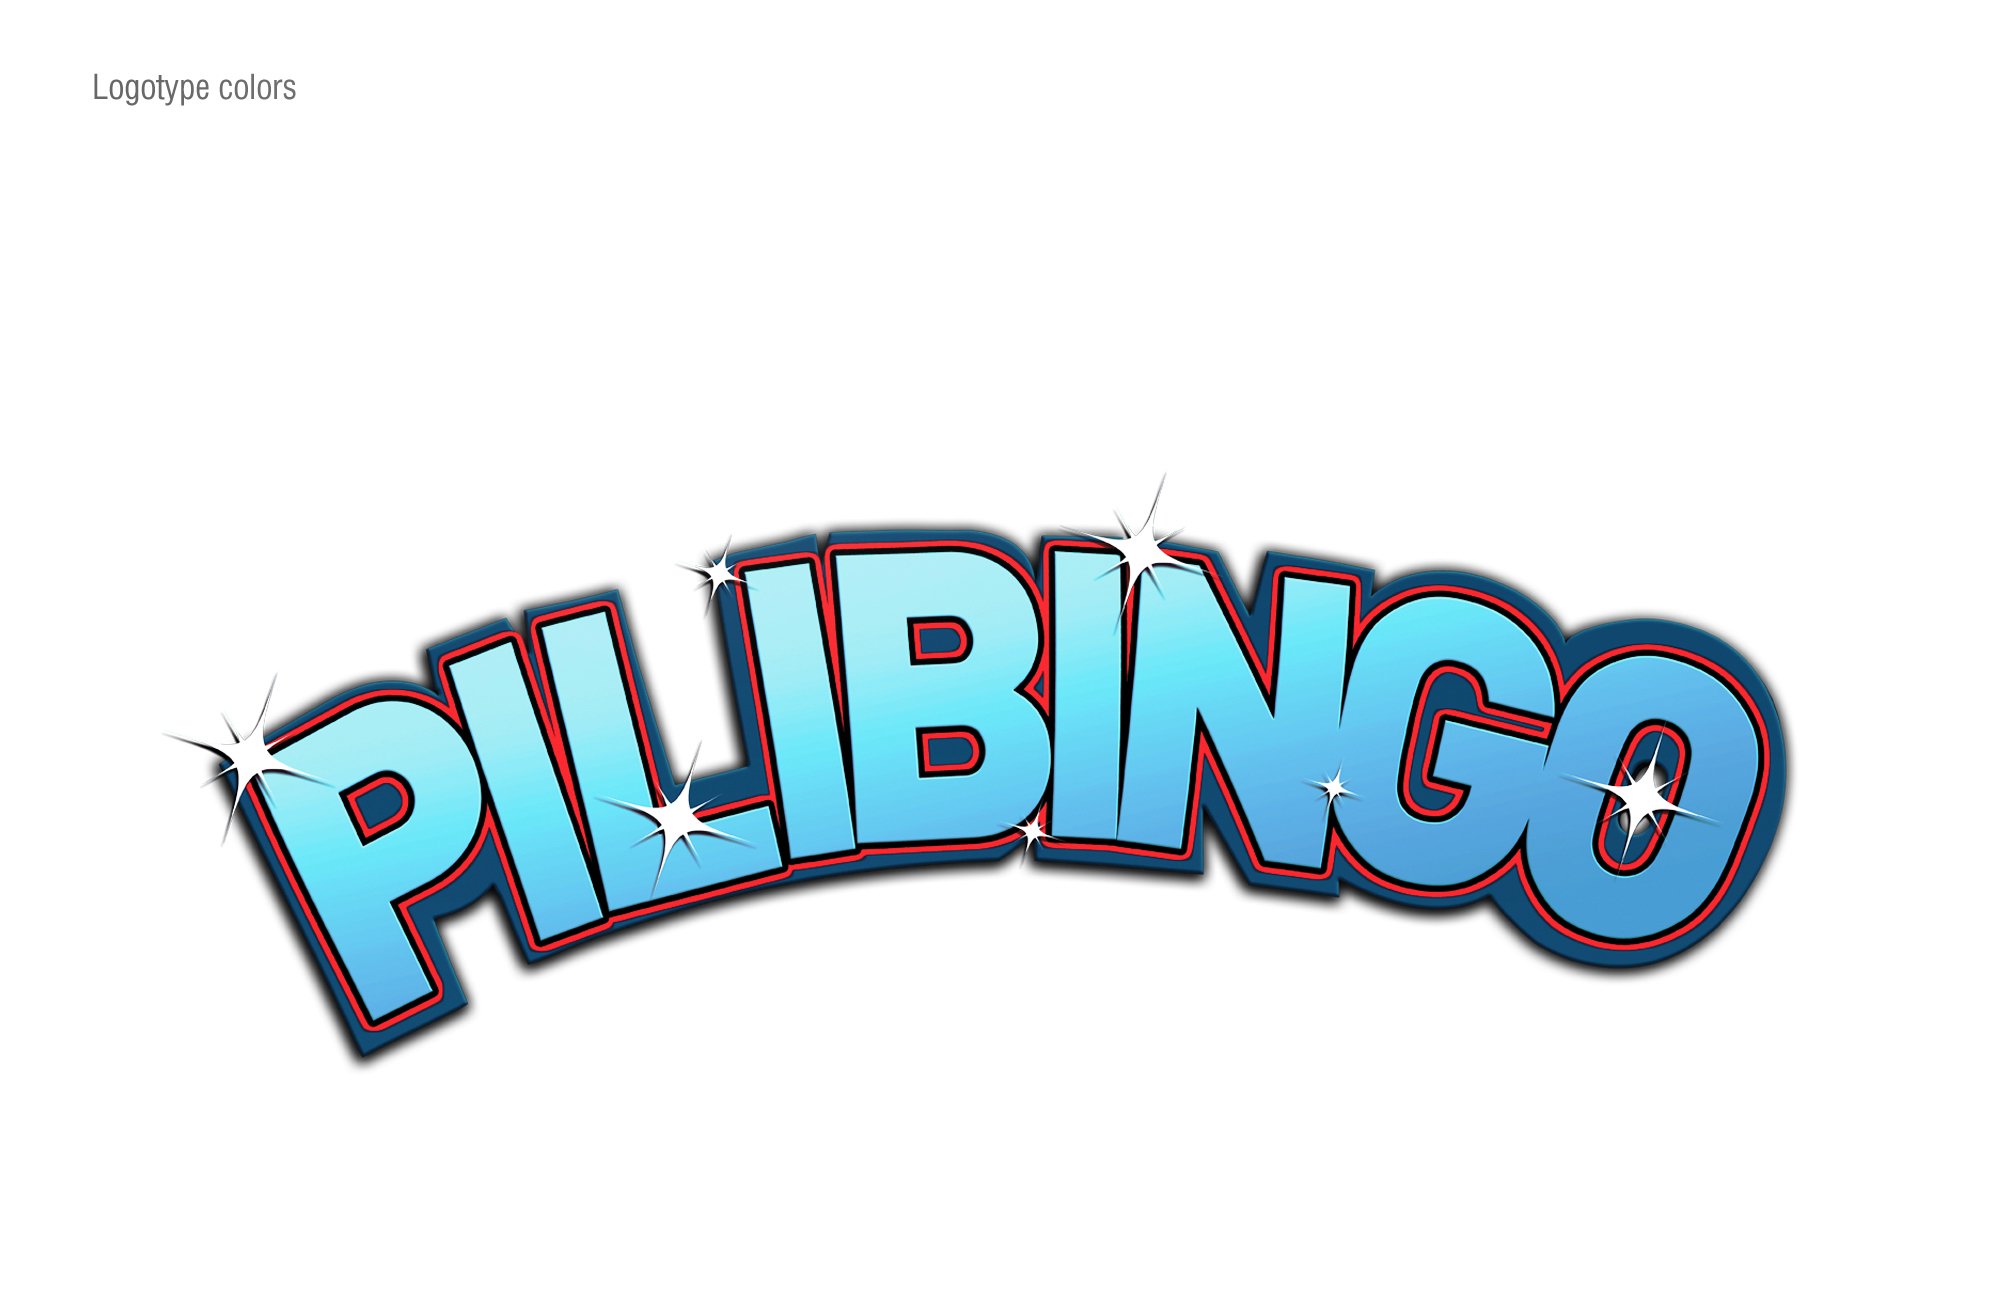  PILIBINGO